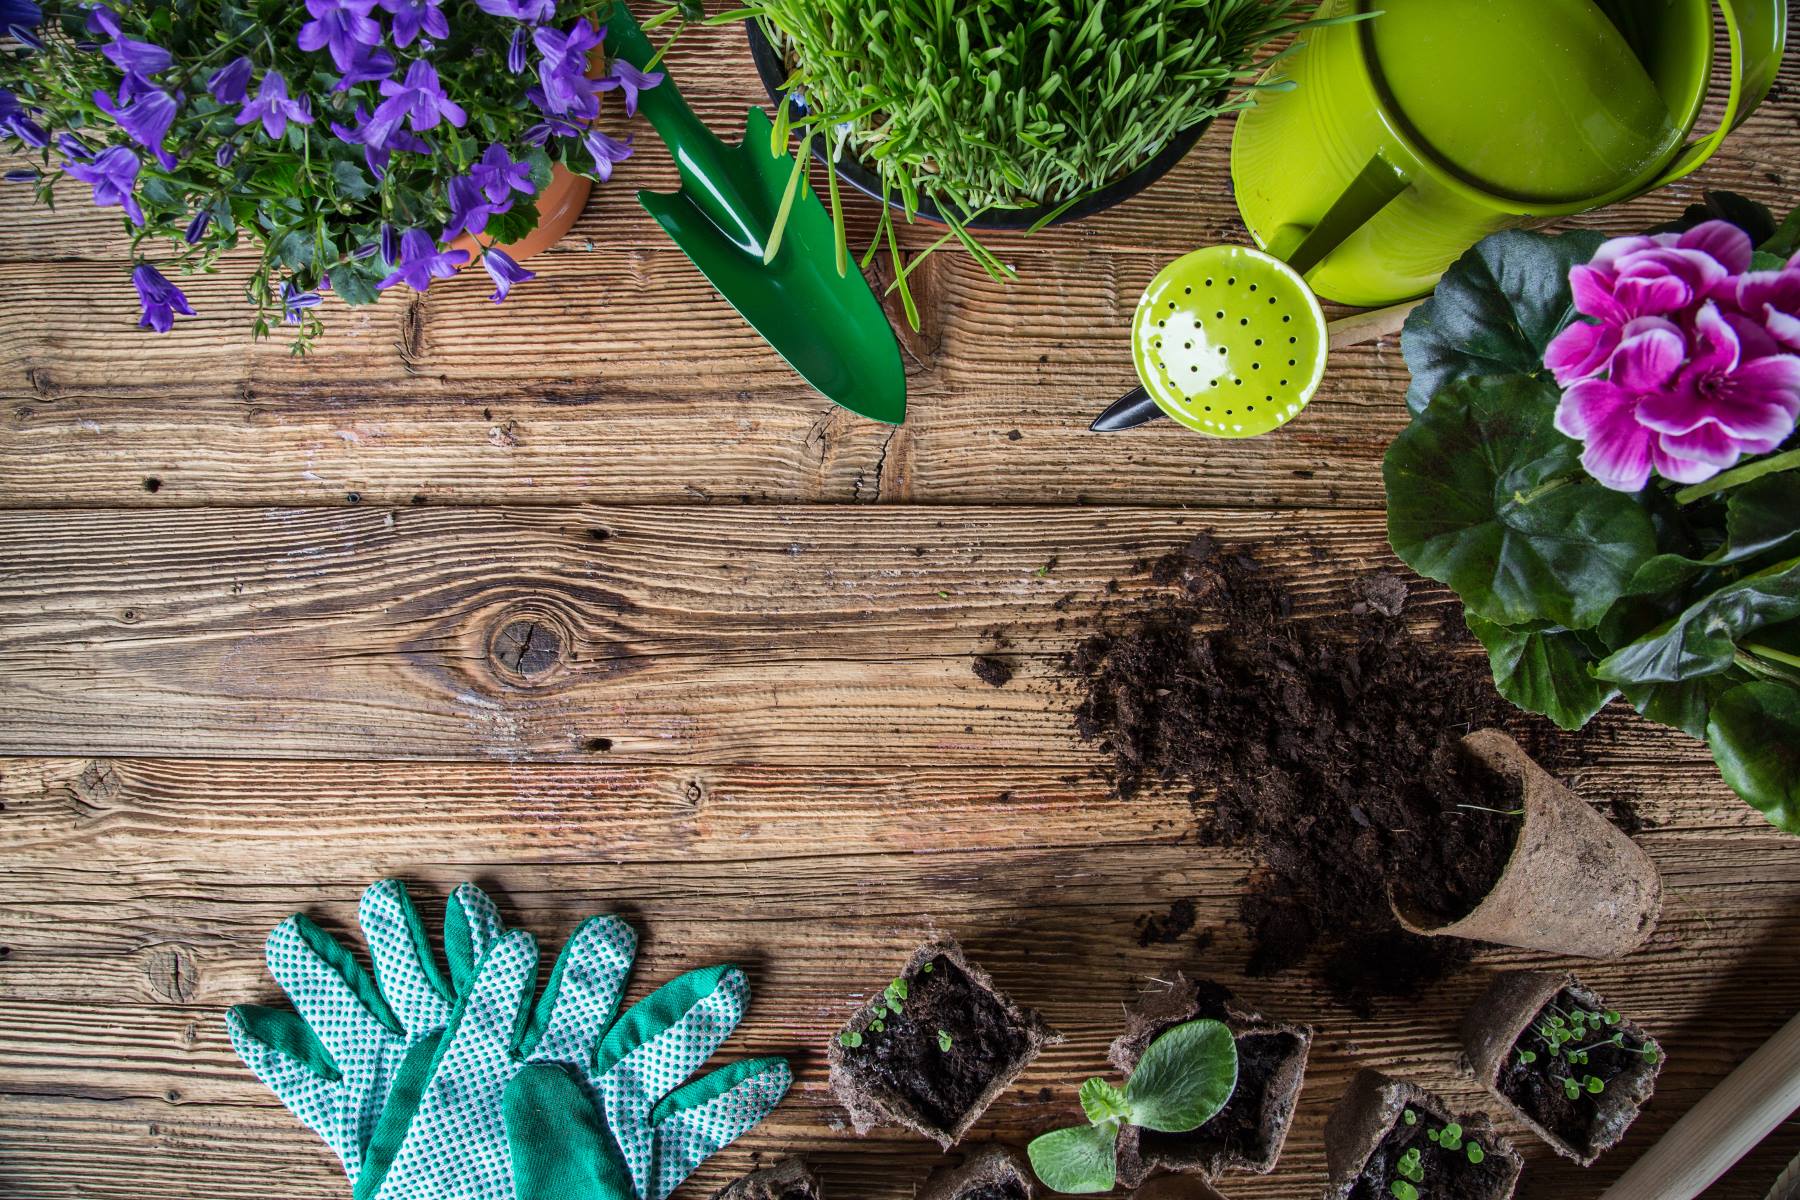 Creative Gardening Tips for the Spring Season